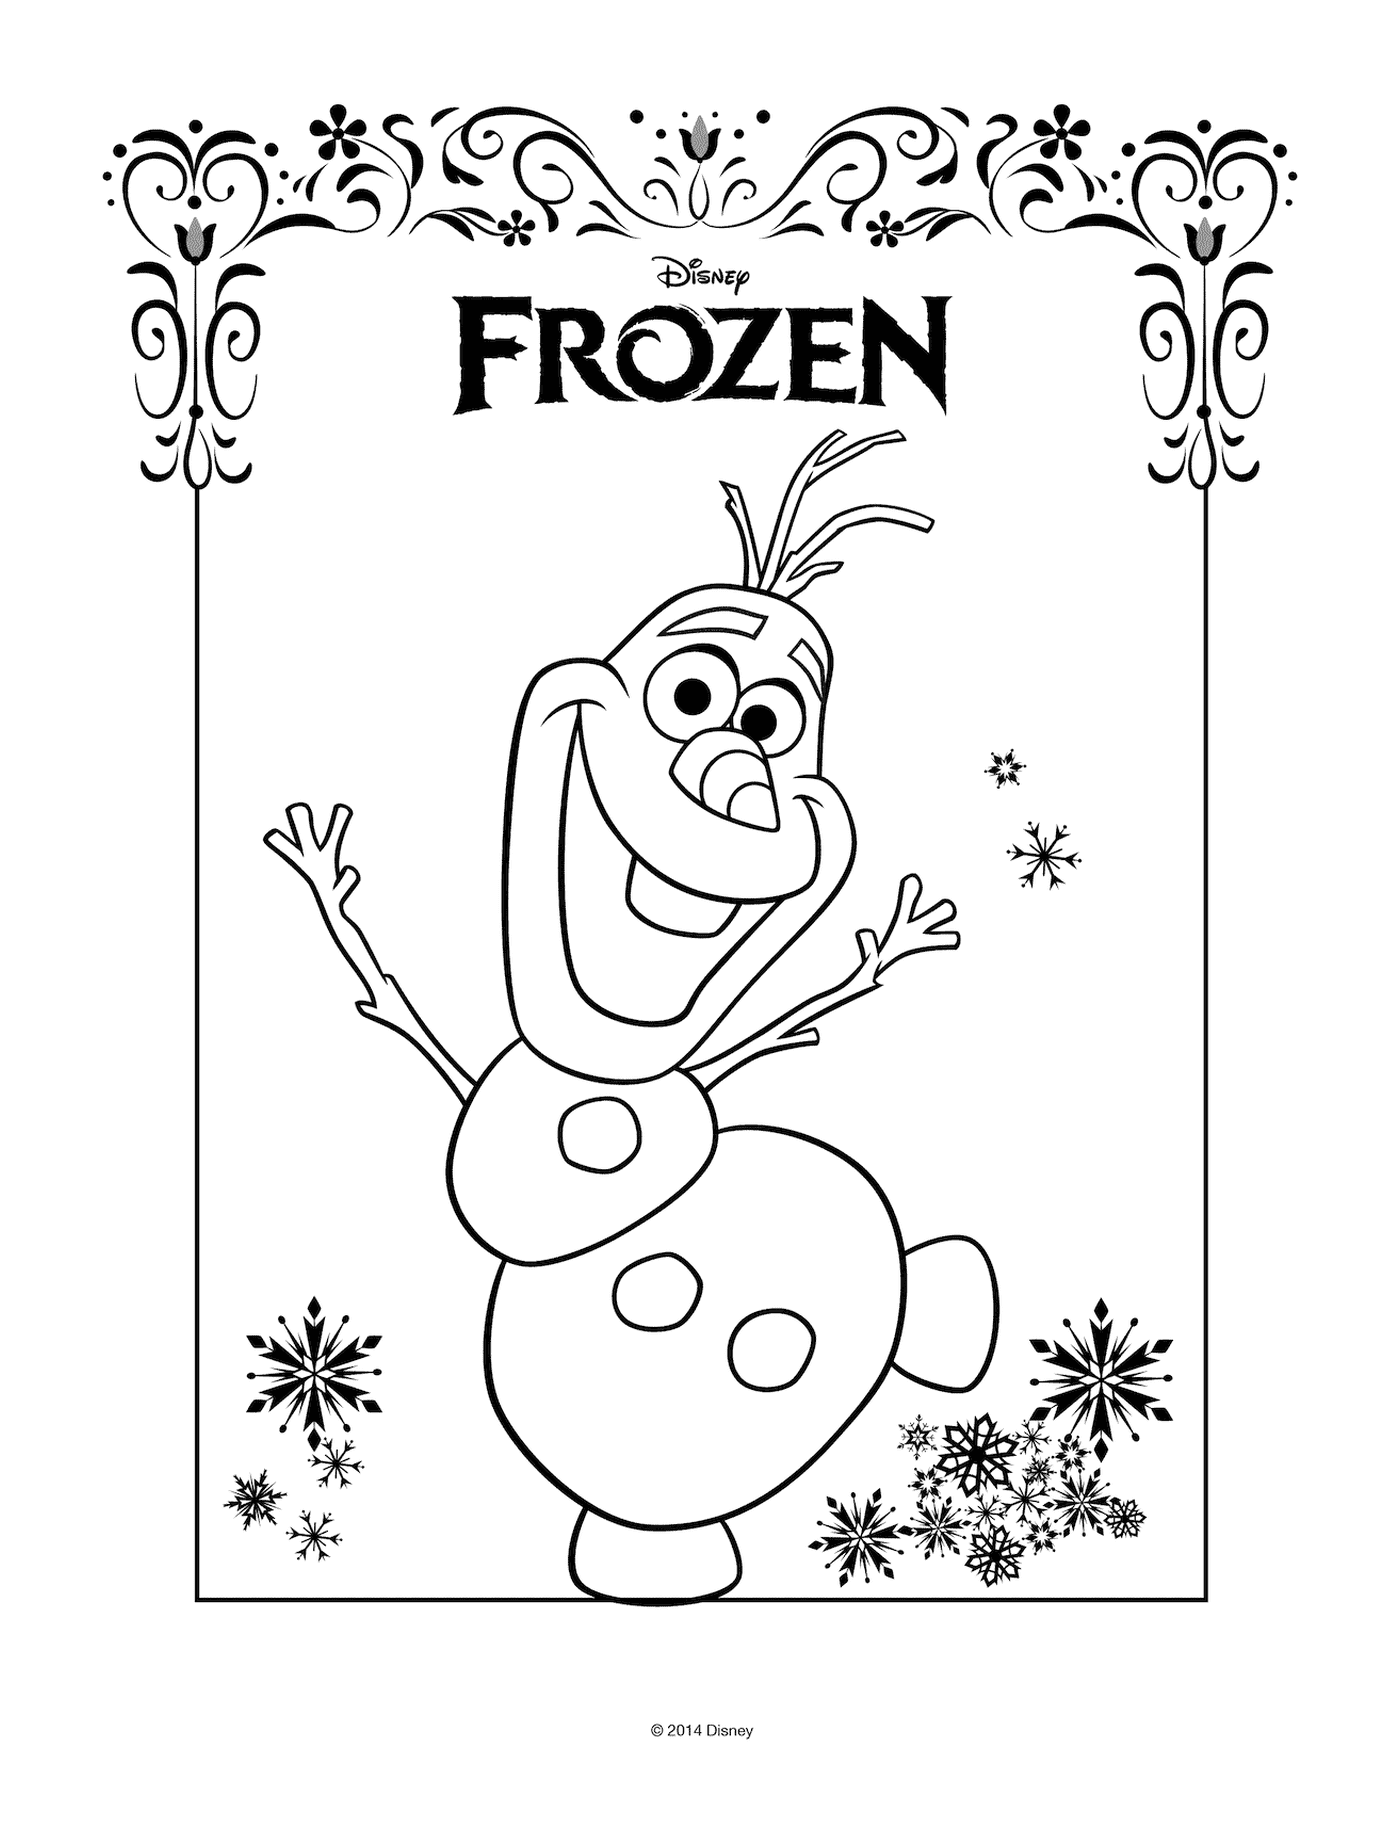  Olaf with Disney's Frozen logo 